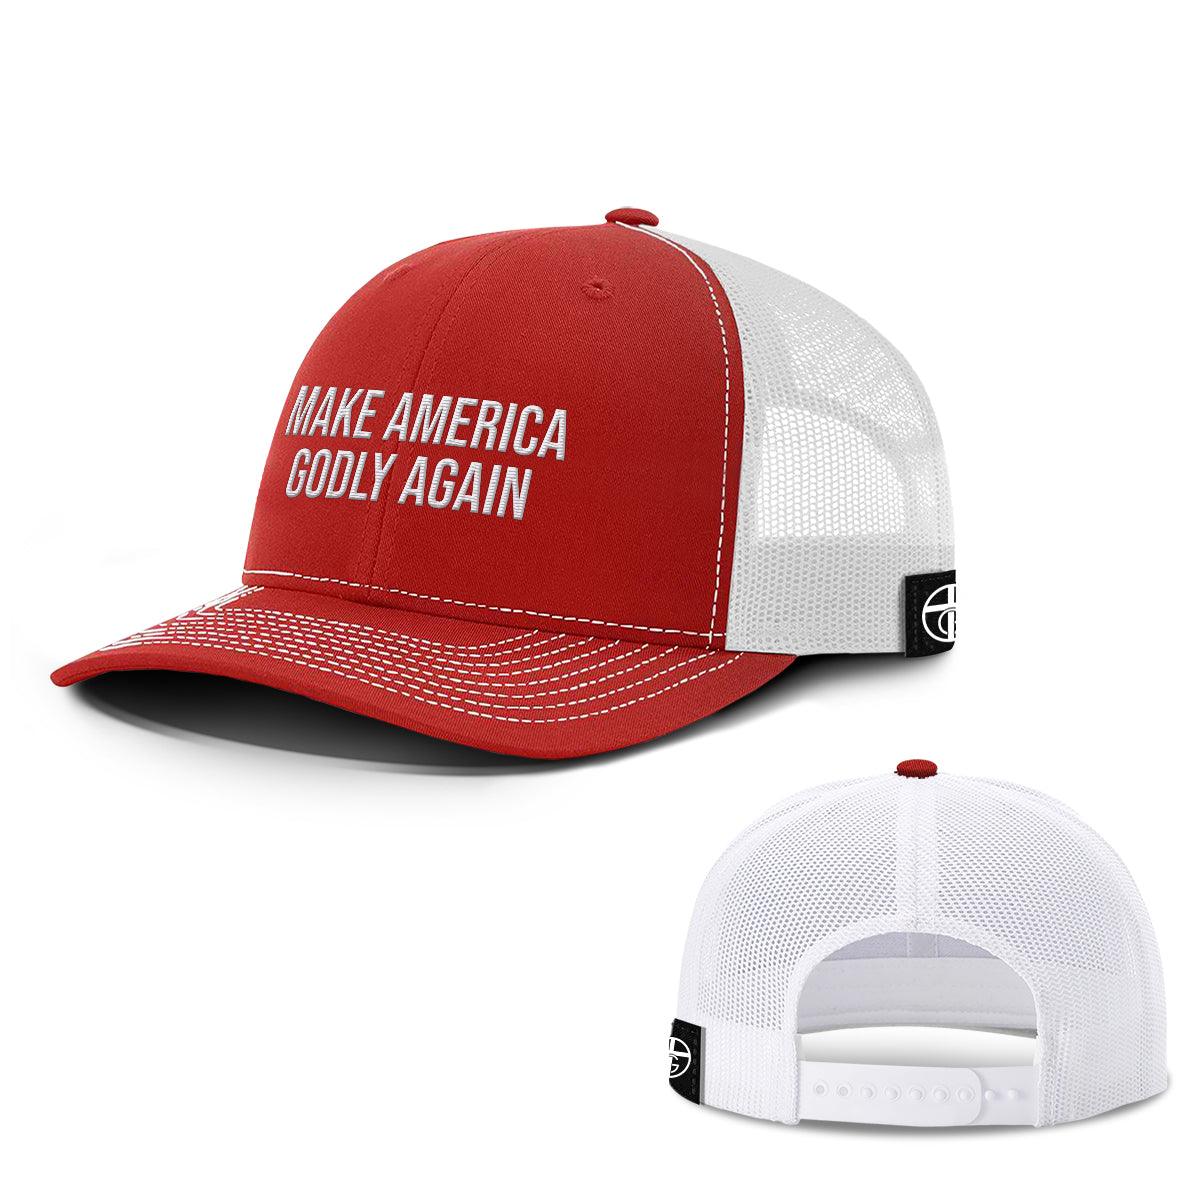 Make America Godly Again Hats